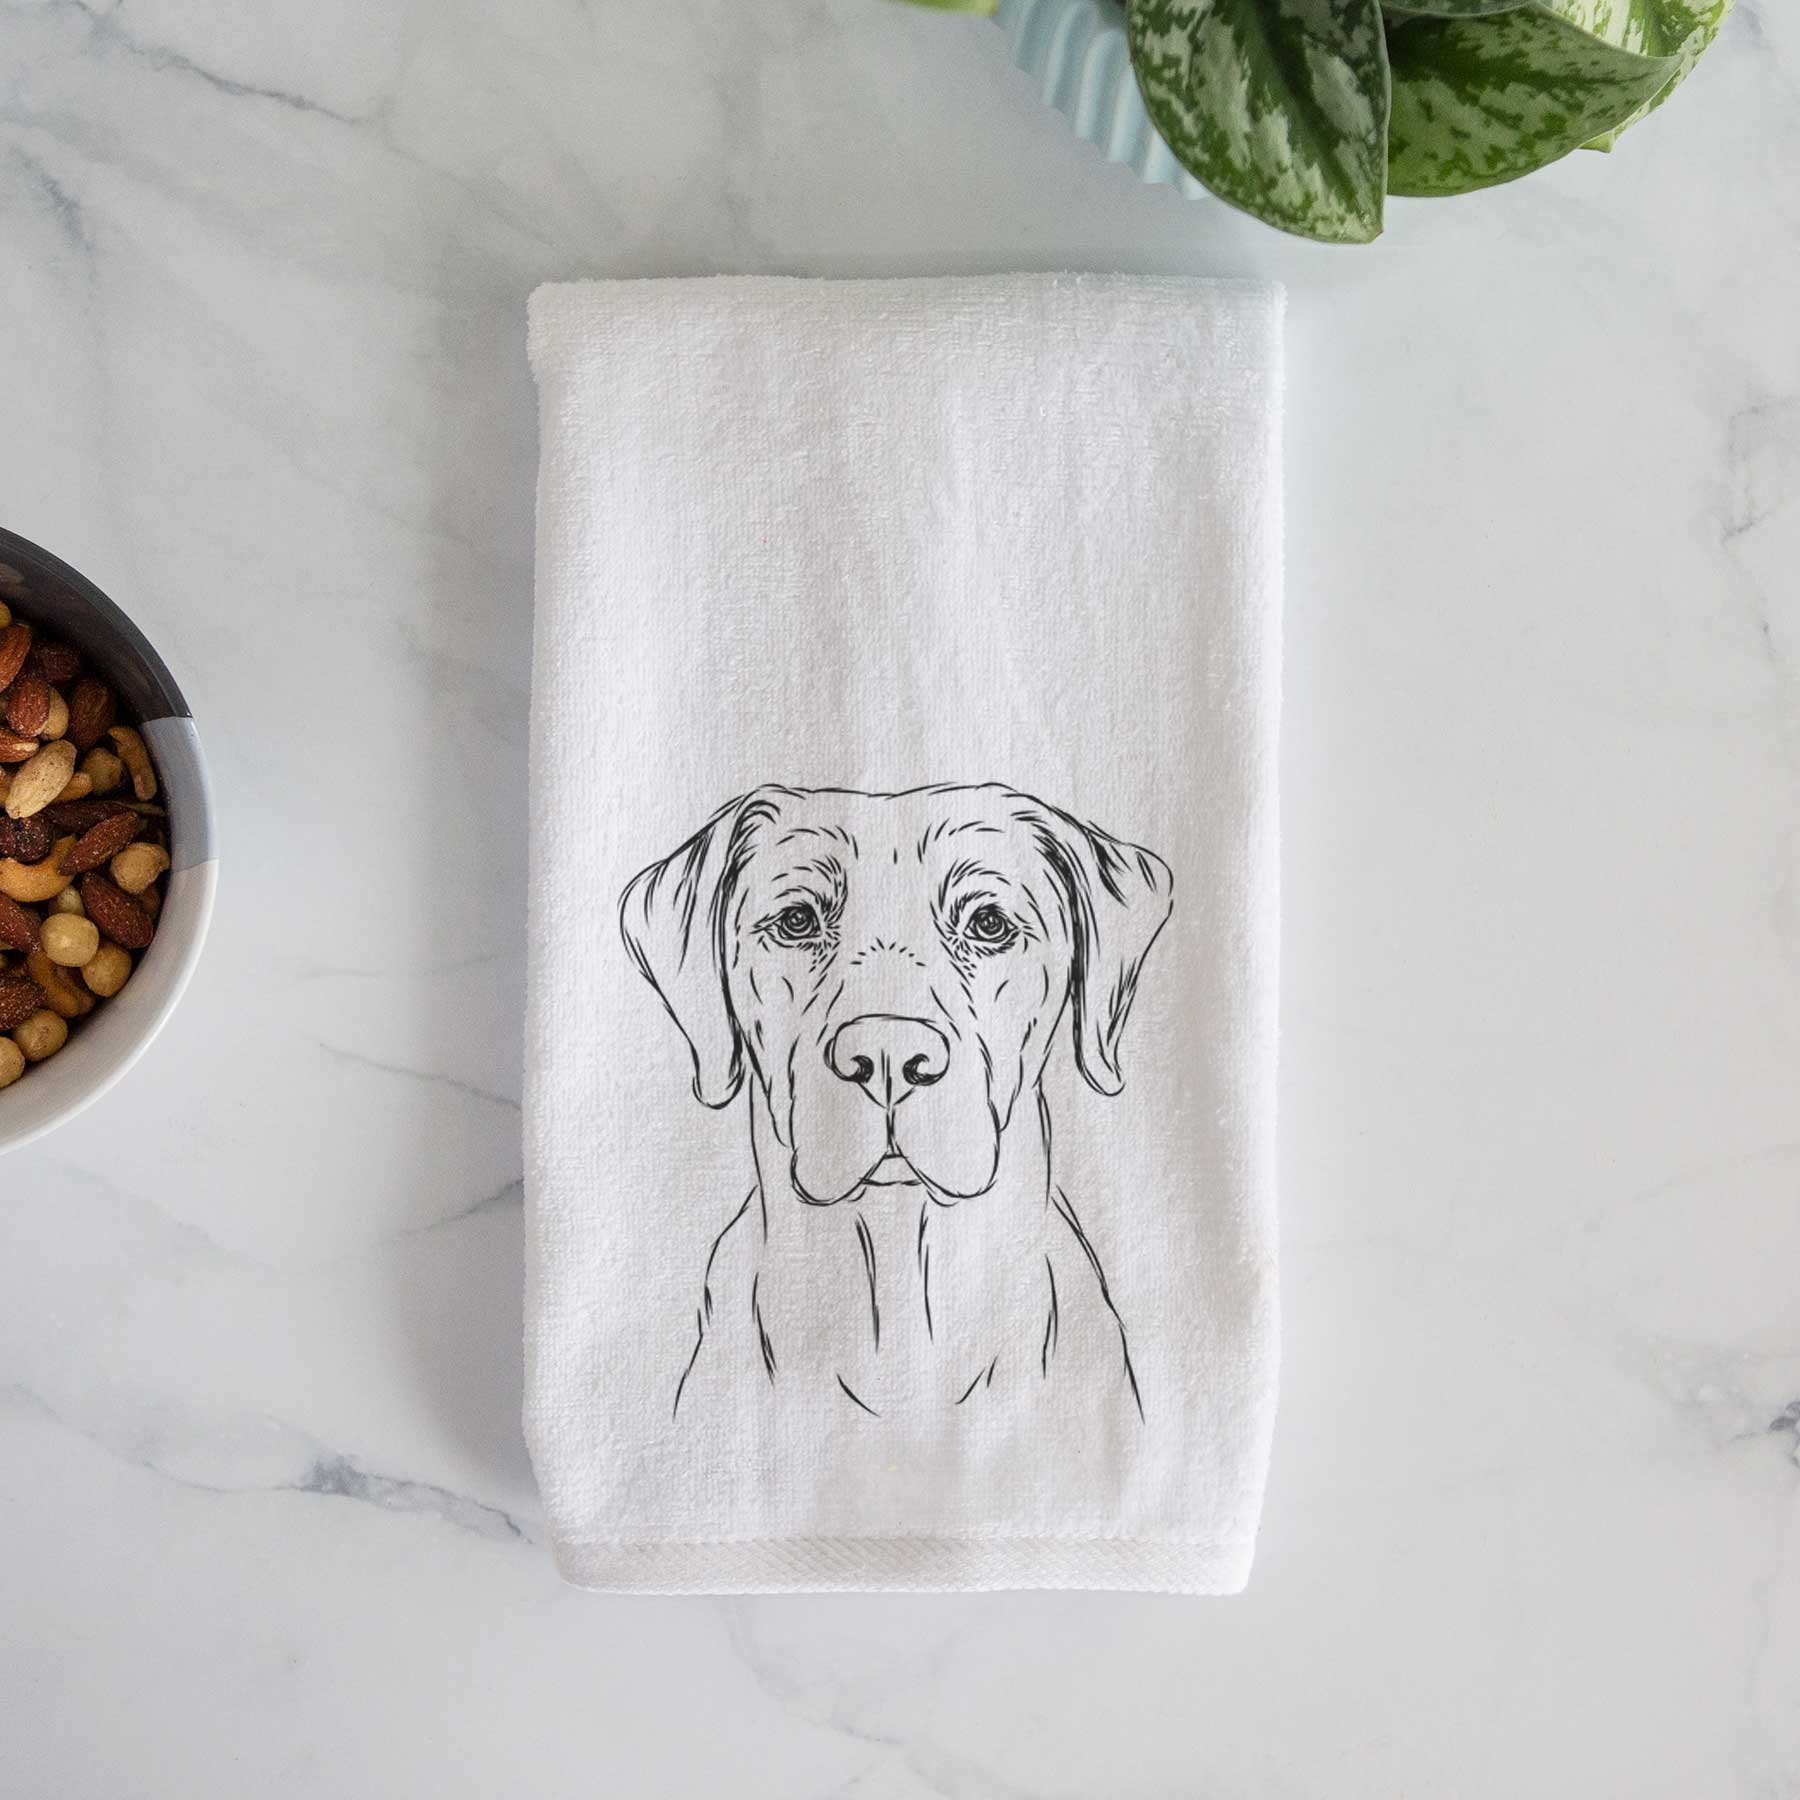 Rowdy the Labrador Retriever Hand Towel